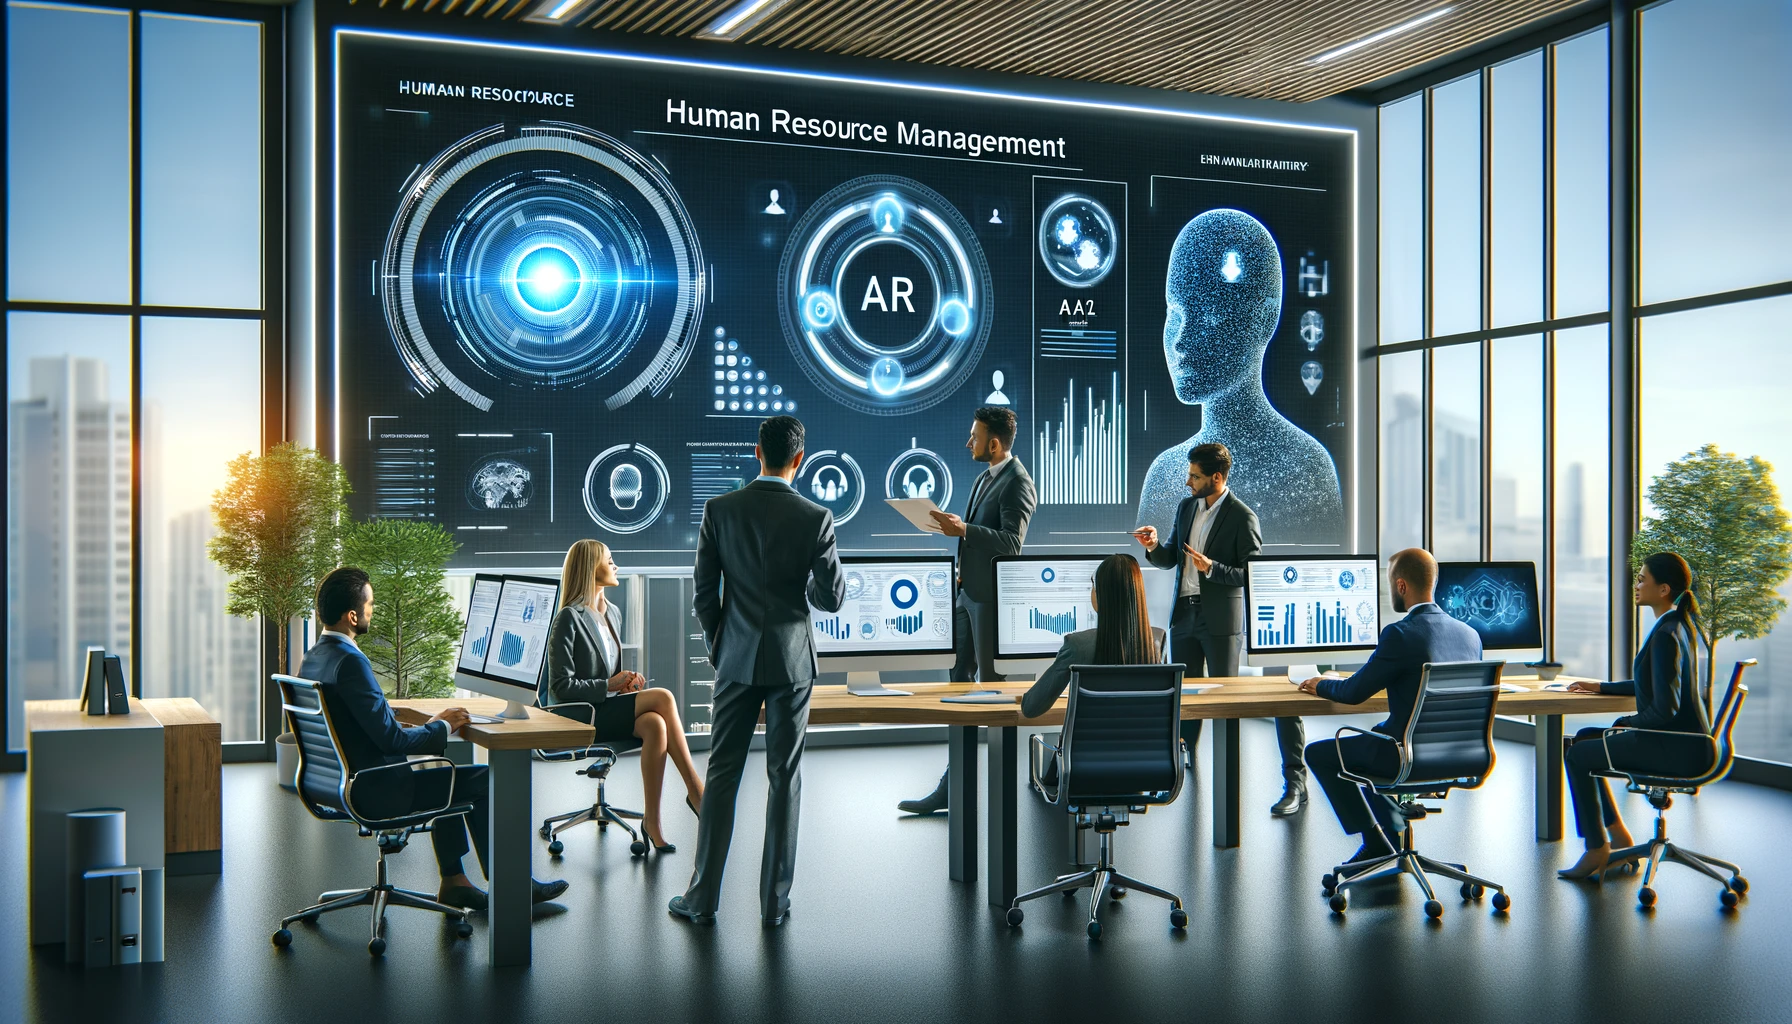 Des professionnels RH interagissant avec des écrans affichant des données analytiques, symbolisant la synergie entre la technologie IA et l'expertise humaine pour une gestion RH plus efficace.